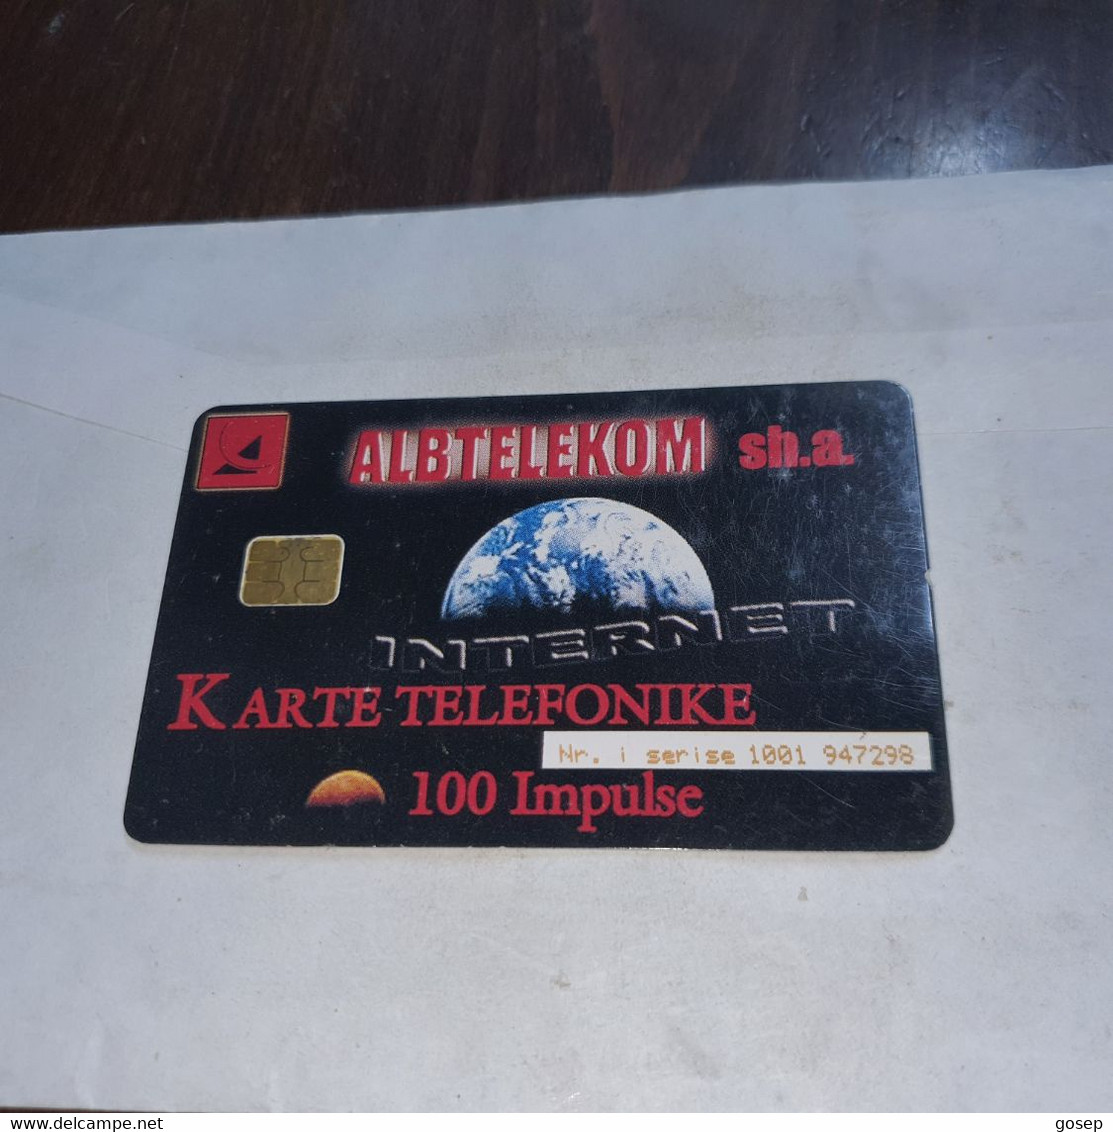 Albania-internet-(100impulse)-(4)-(1001-947298)-tirage-100.000-used Card+1card Prepiad Free - Albania